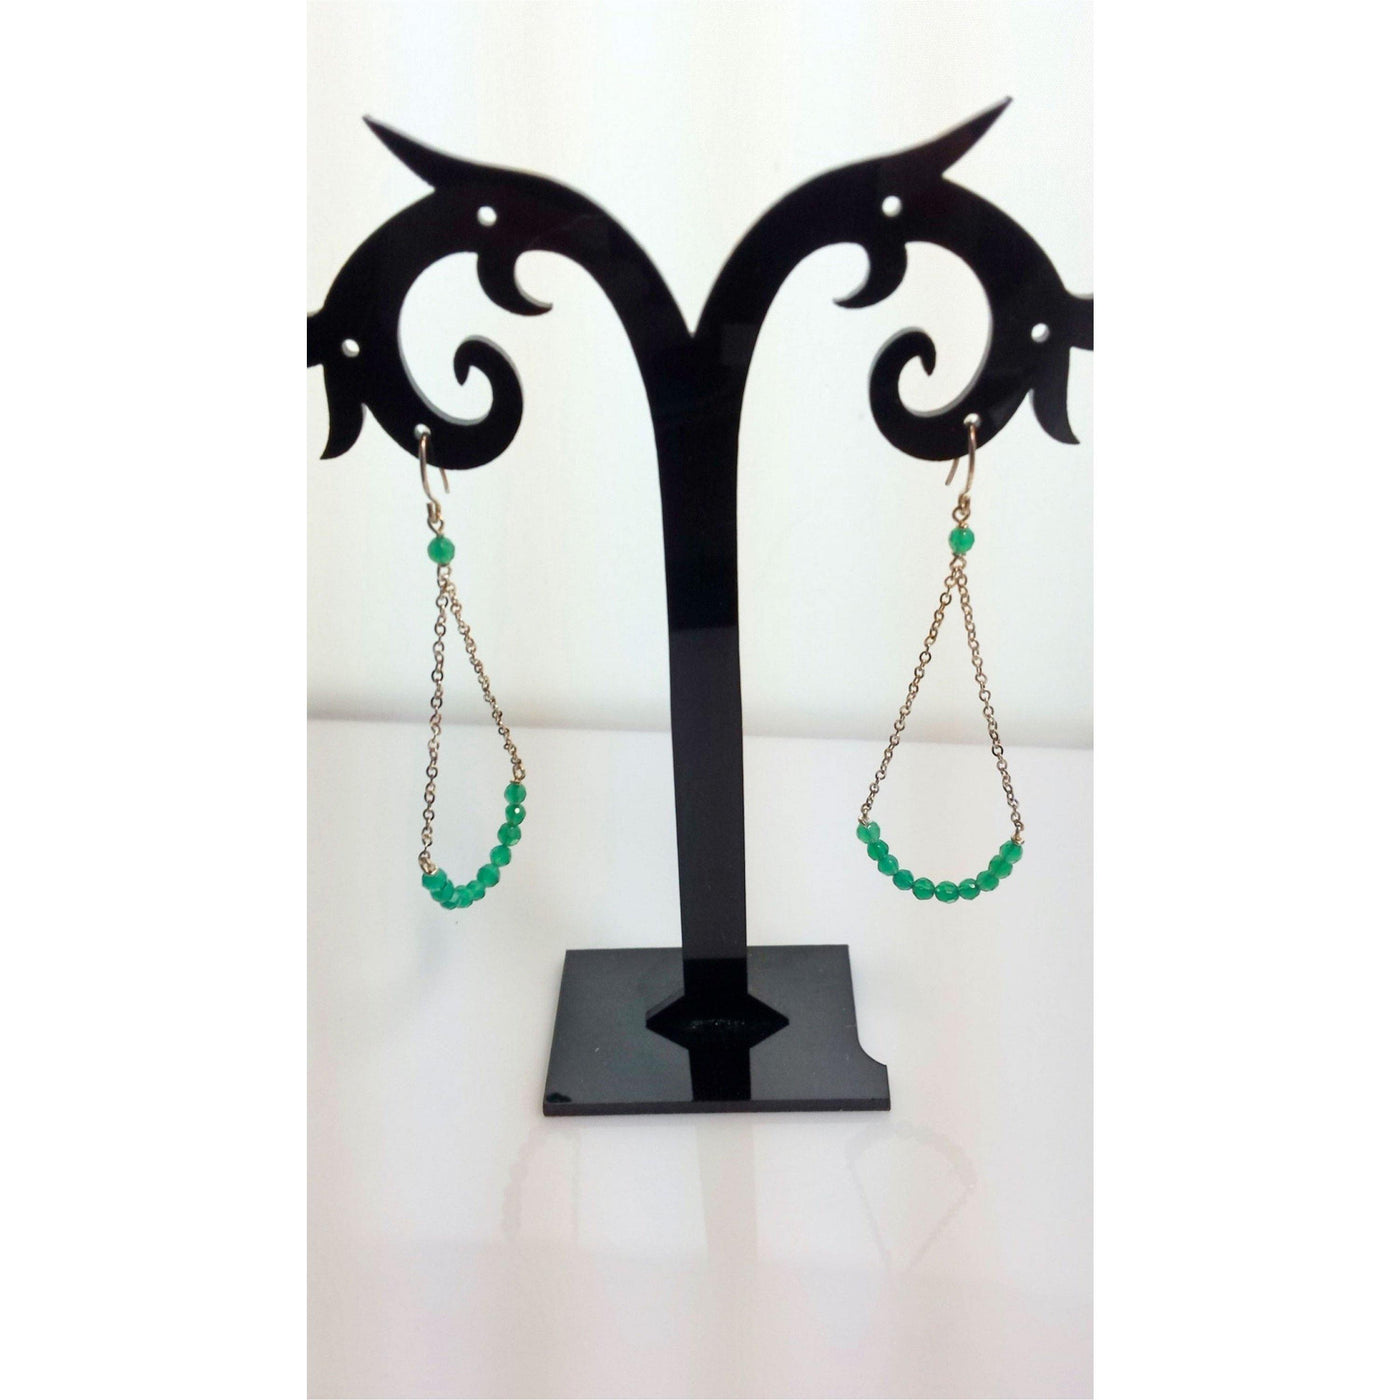 Glamorous green onyx chandelier earrings - LB Designs